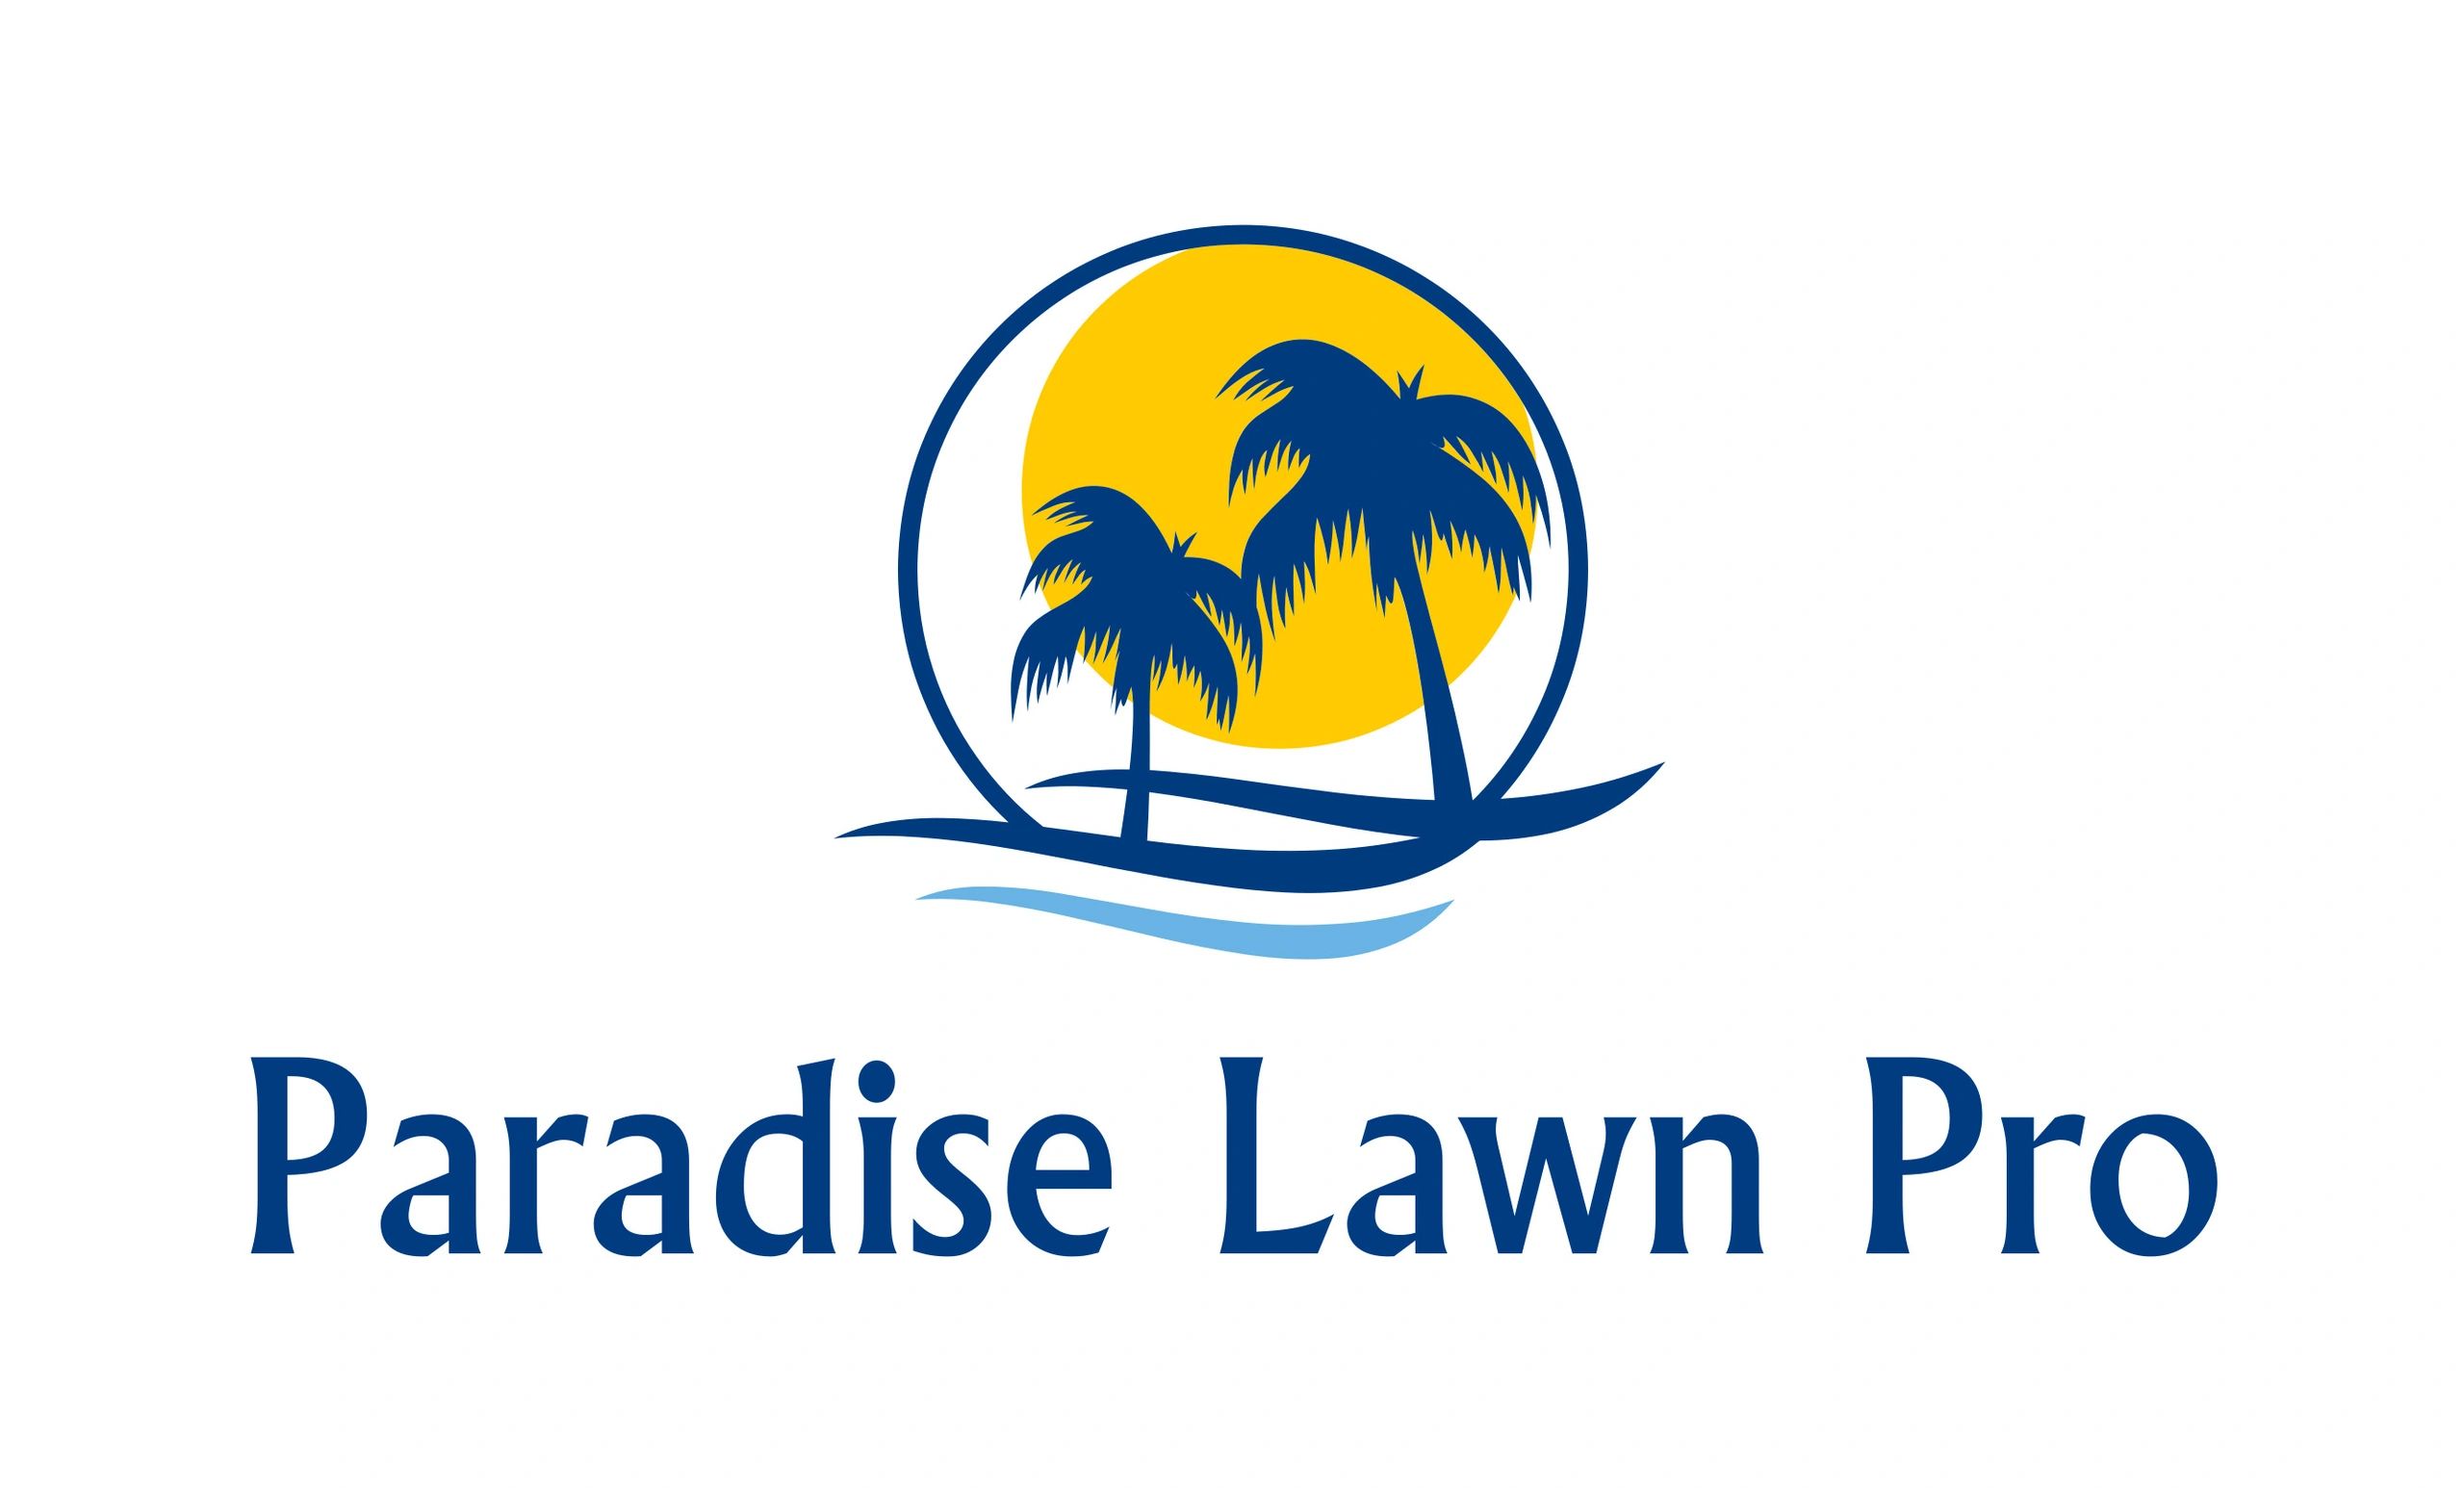 Paradise Lawn Pro